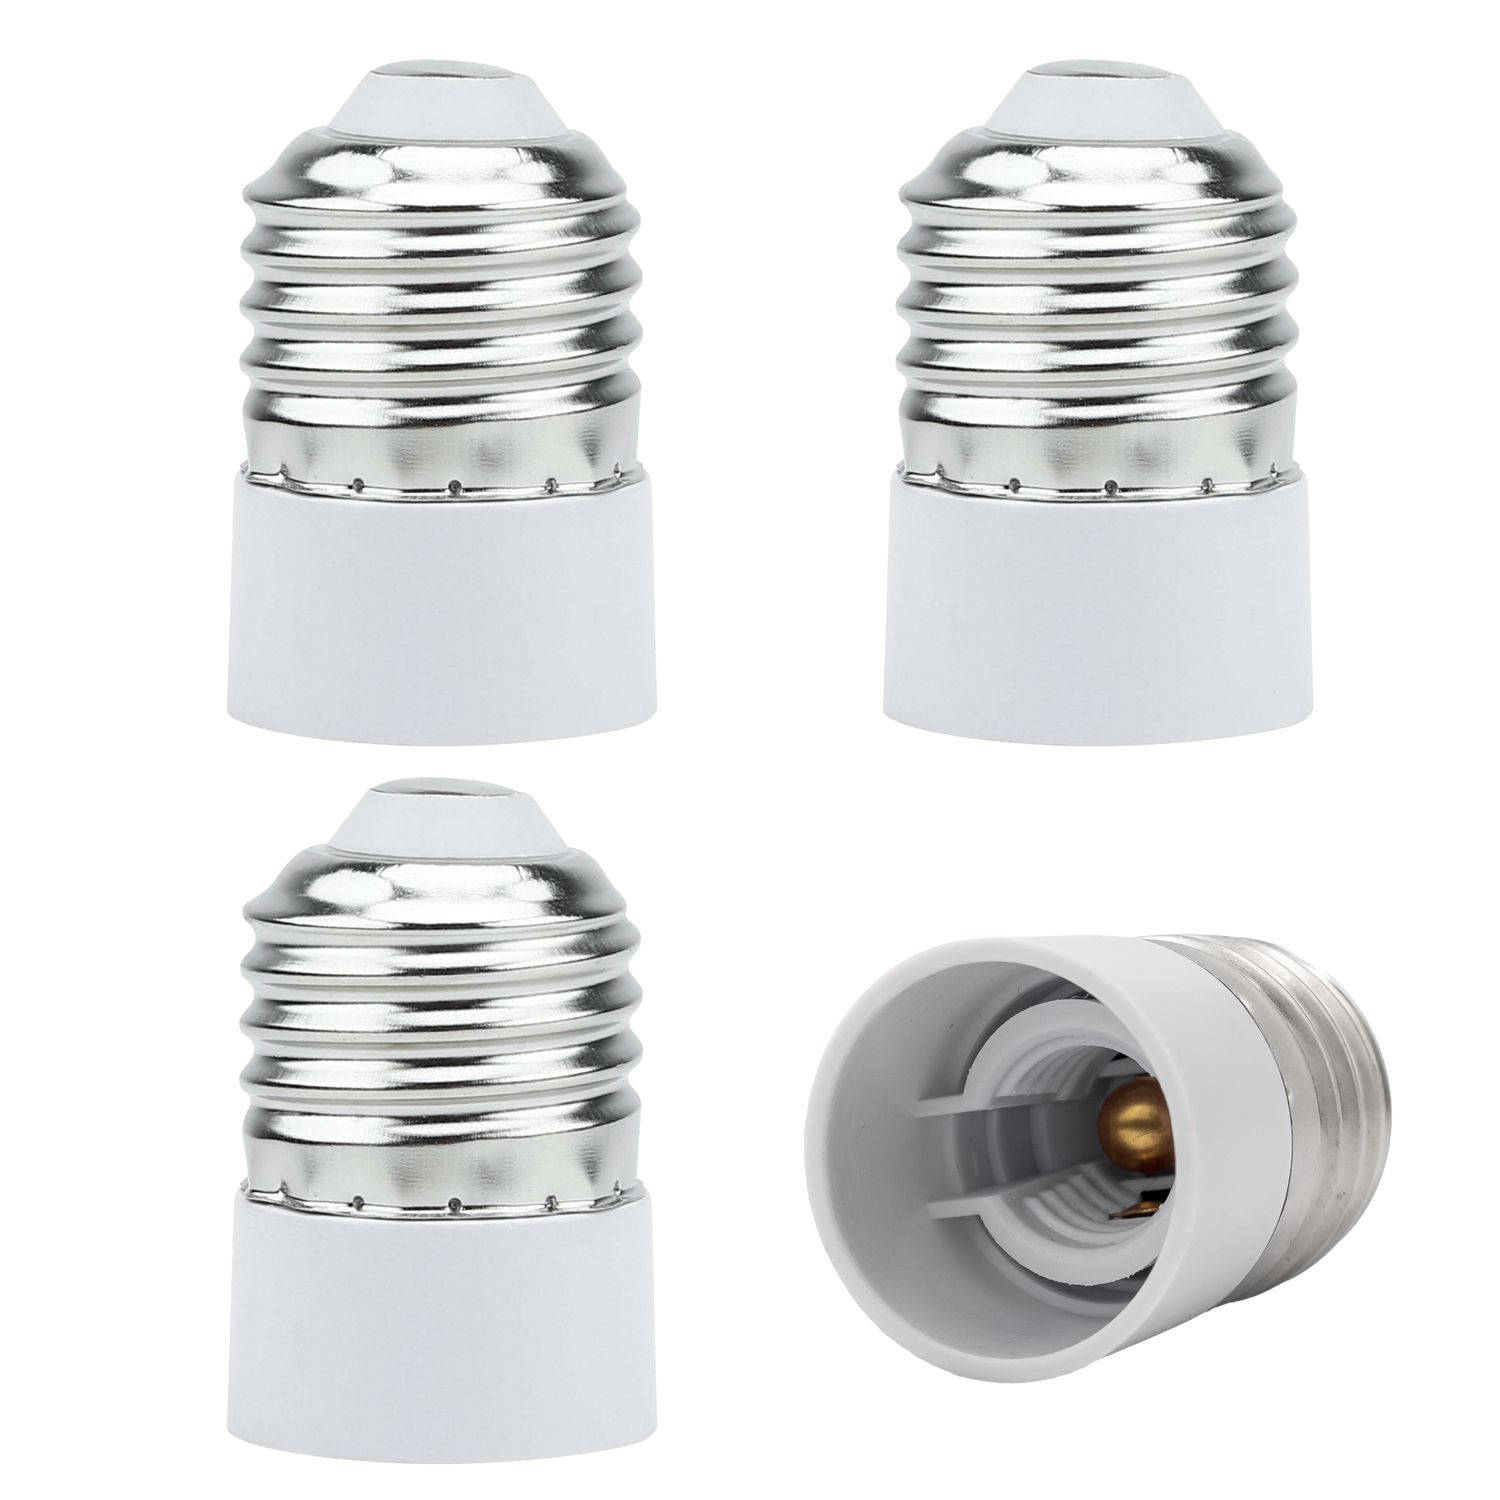 INTIRILIFE E27 naar E14 lampvoet adapter in wit - 4x lampadapter voor het omvormen van E27 naar E14-set van 4 converter voor lamphouder voor gloeilampen, led, halogeen, spaarlampen